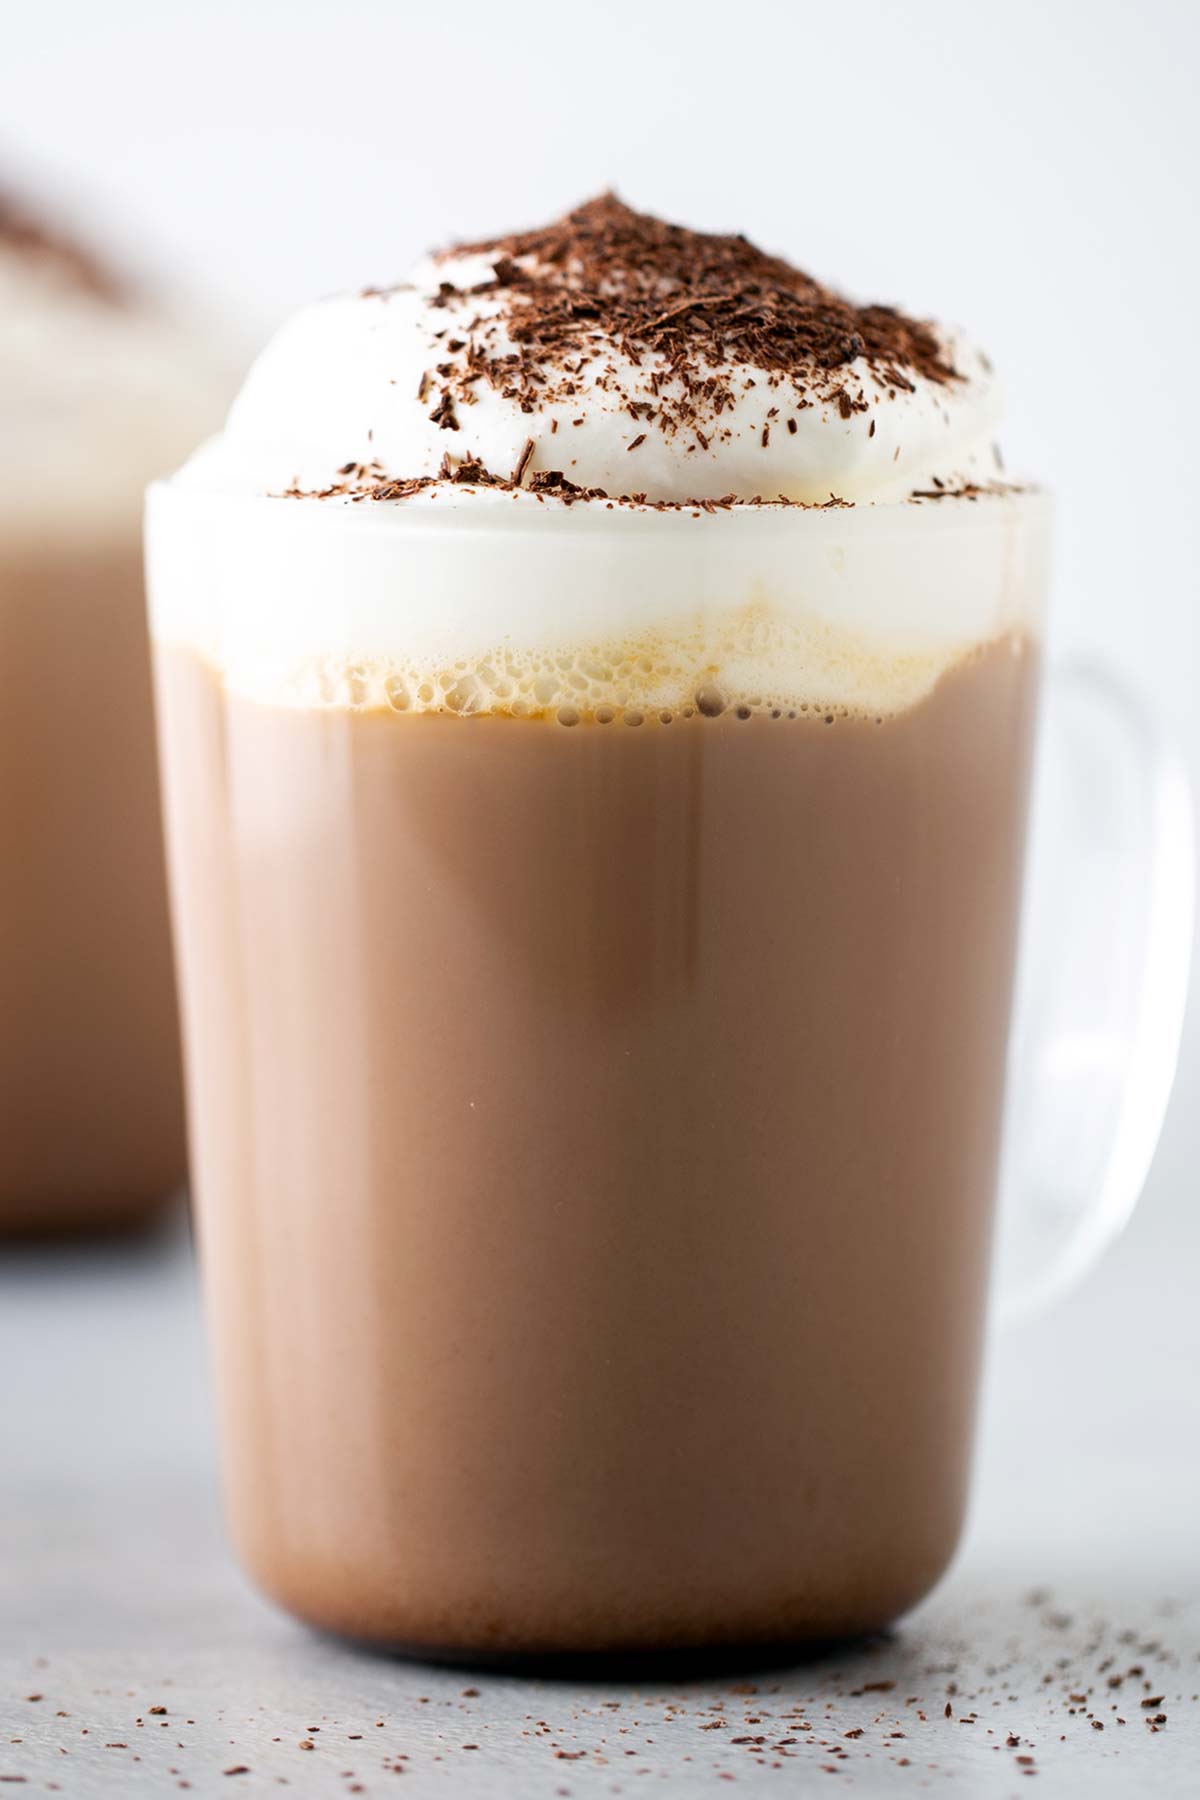 Starbucks Peppermint Mocha Copycat dalam mug bening dengan whipped cream dan cokelat ikal di atasnya.